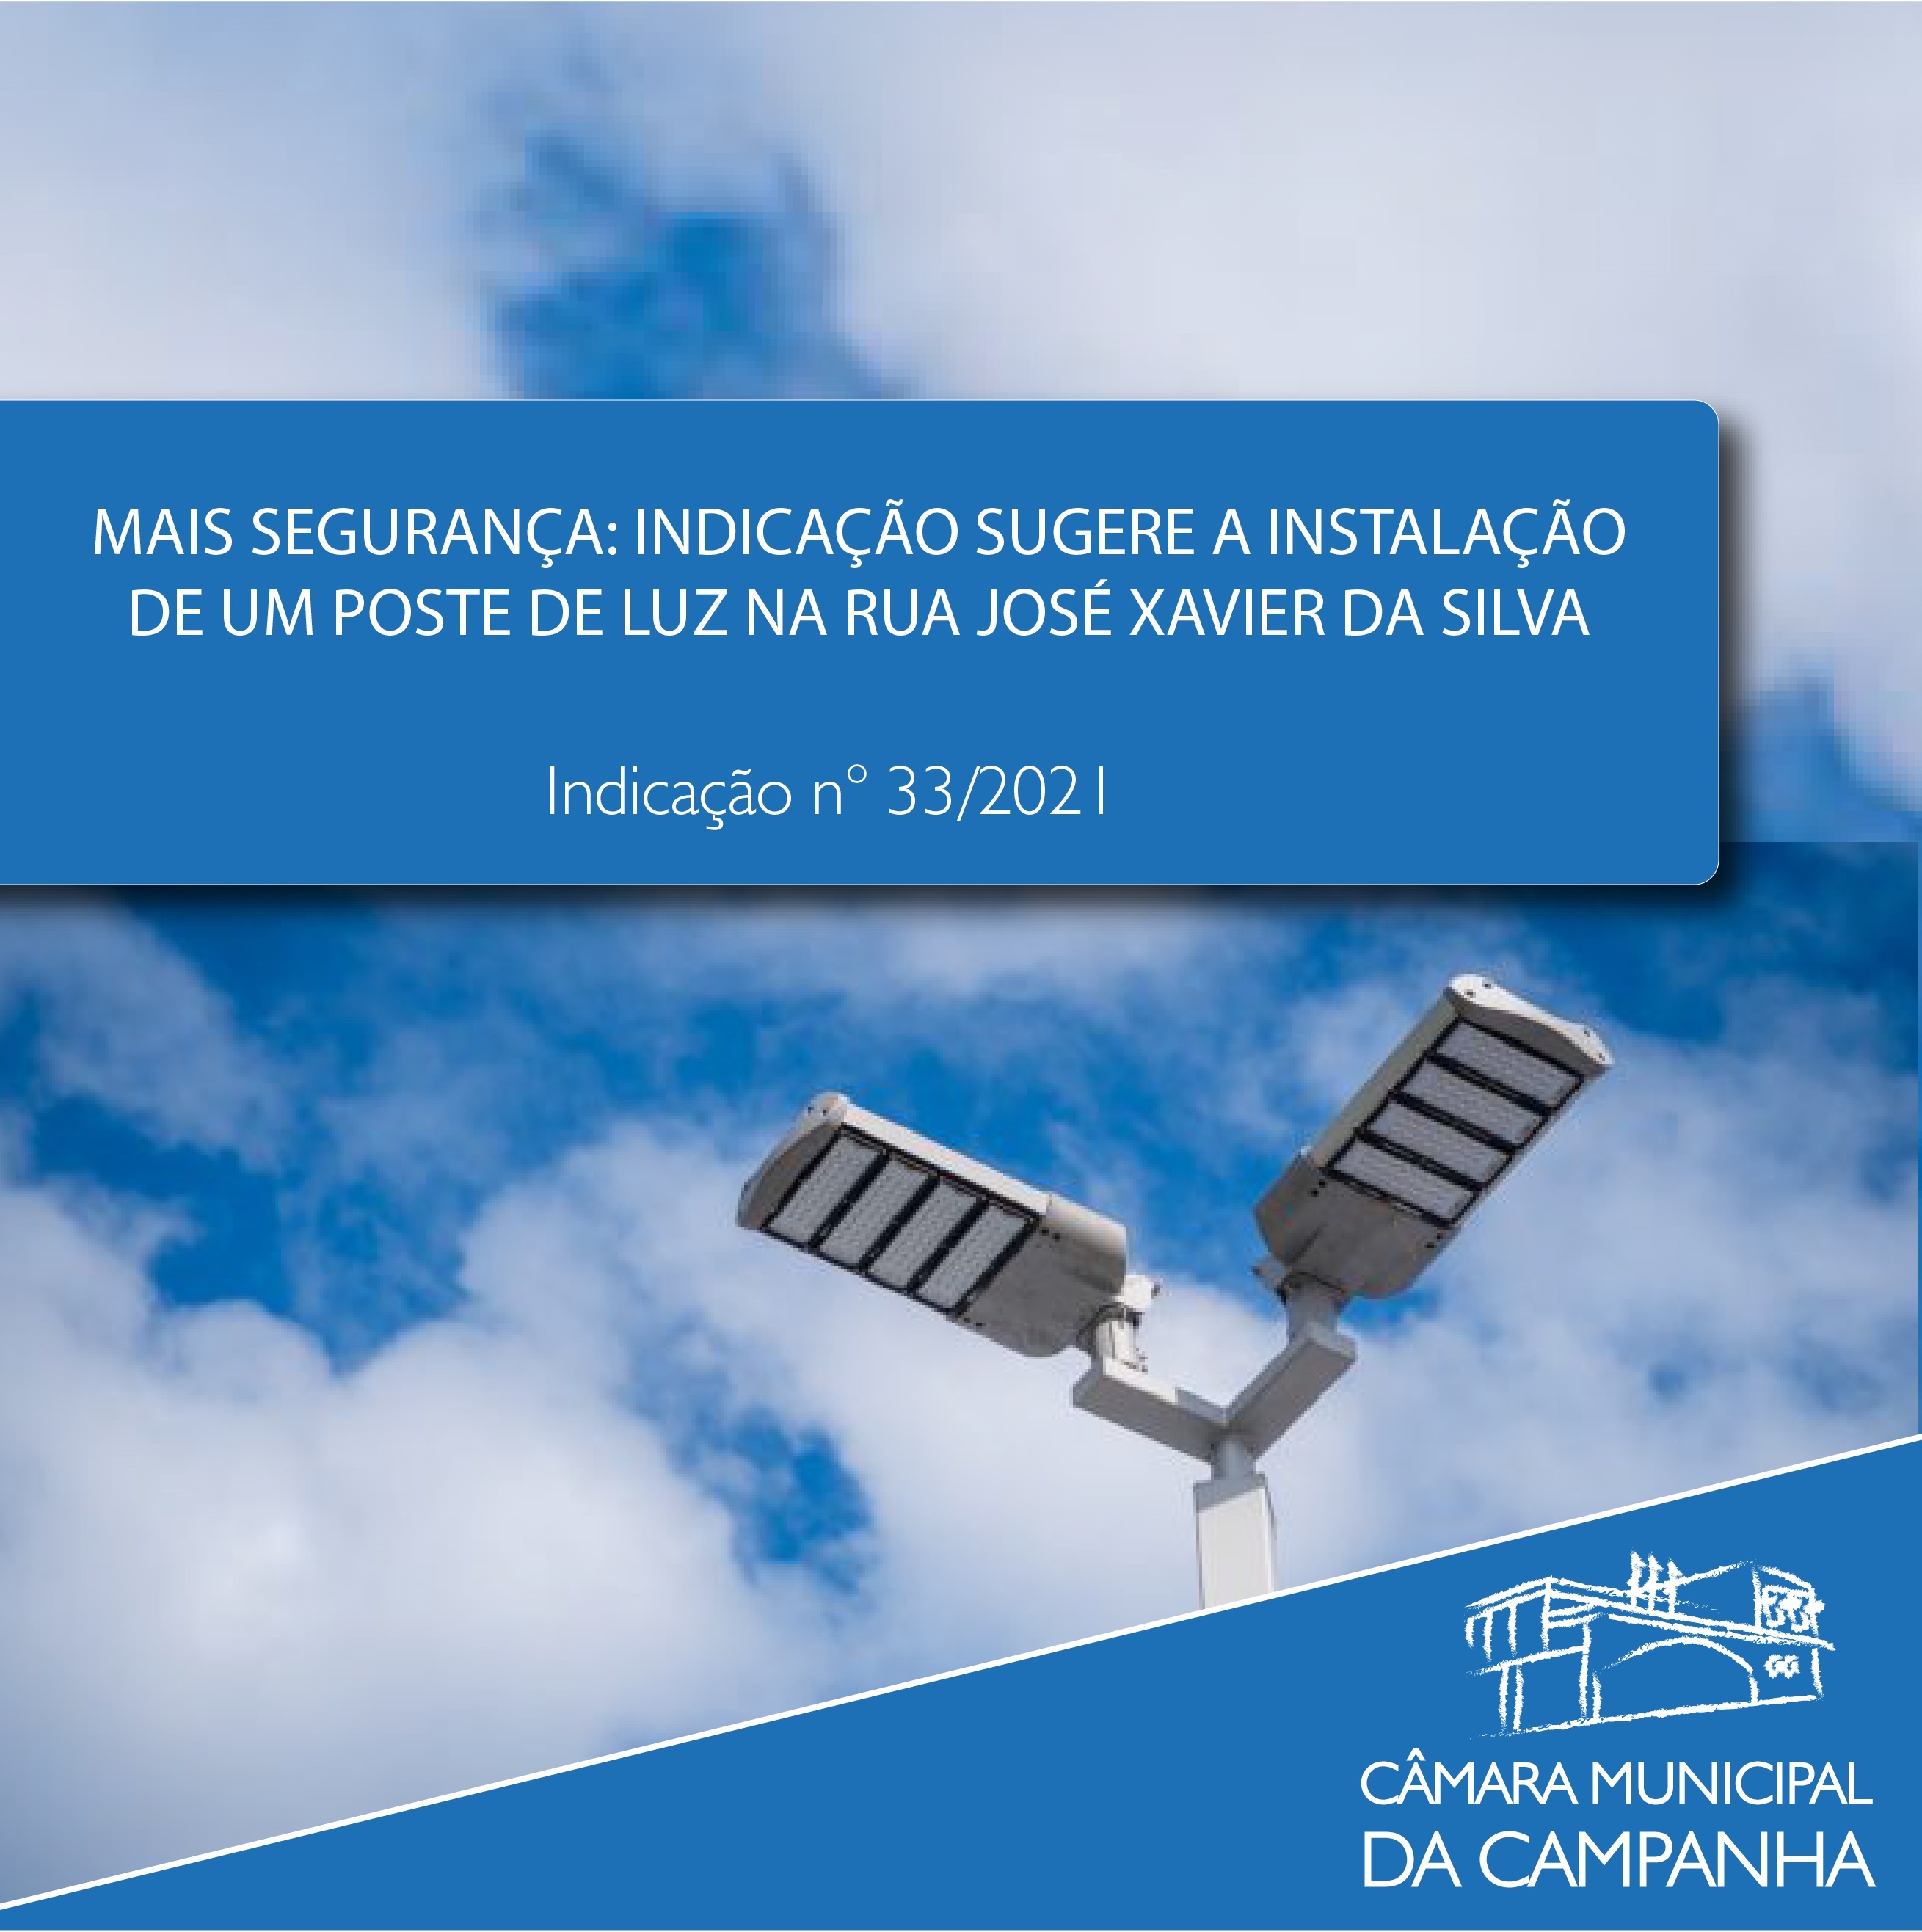 Indicação sugere a instalação de um poste de iluminação na Rua José Xavier da Silva